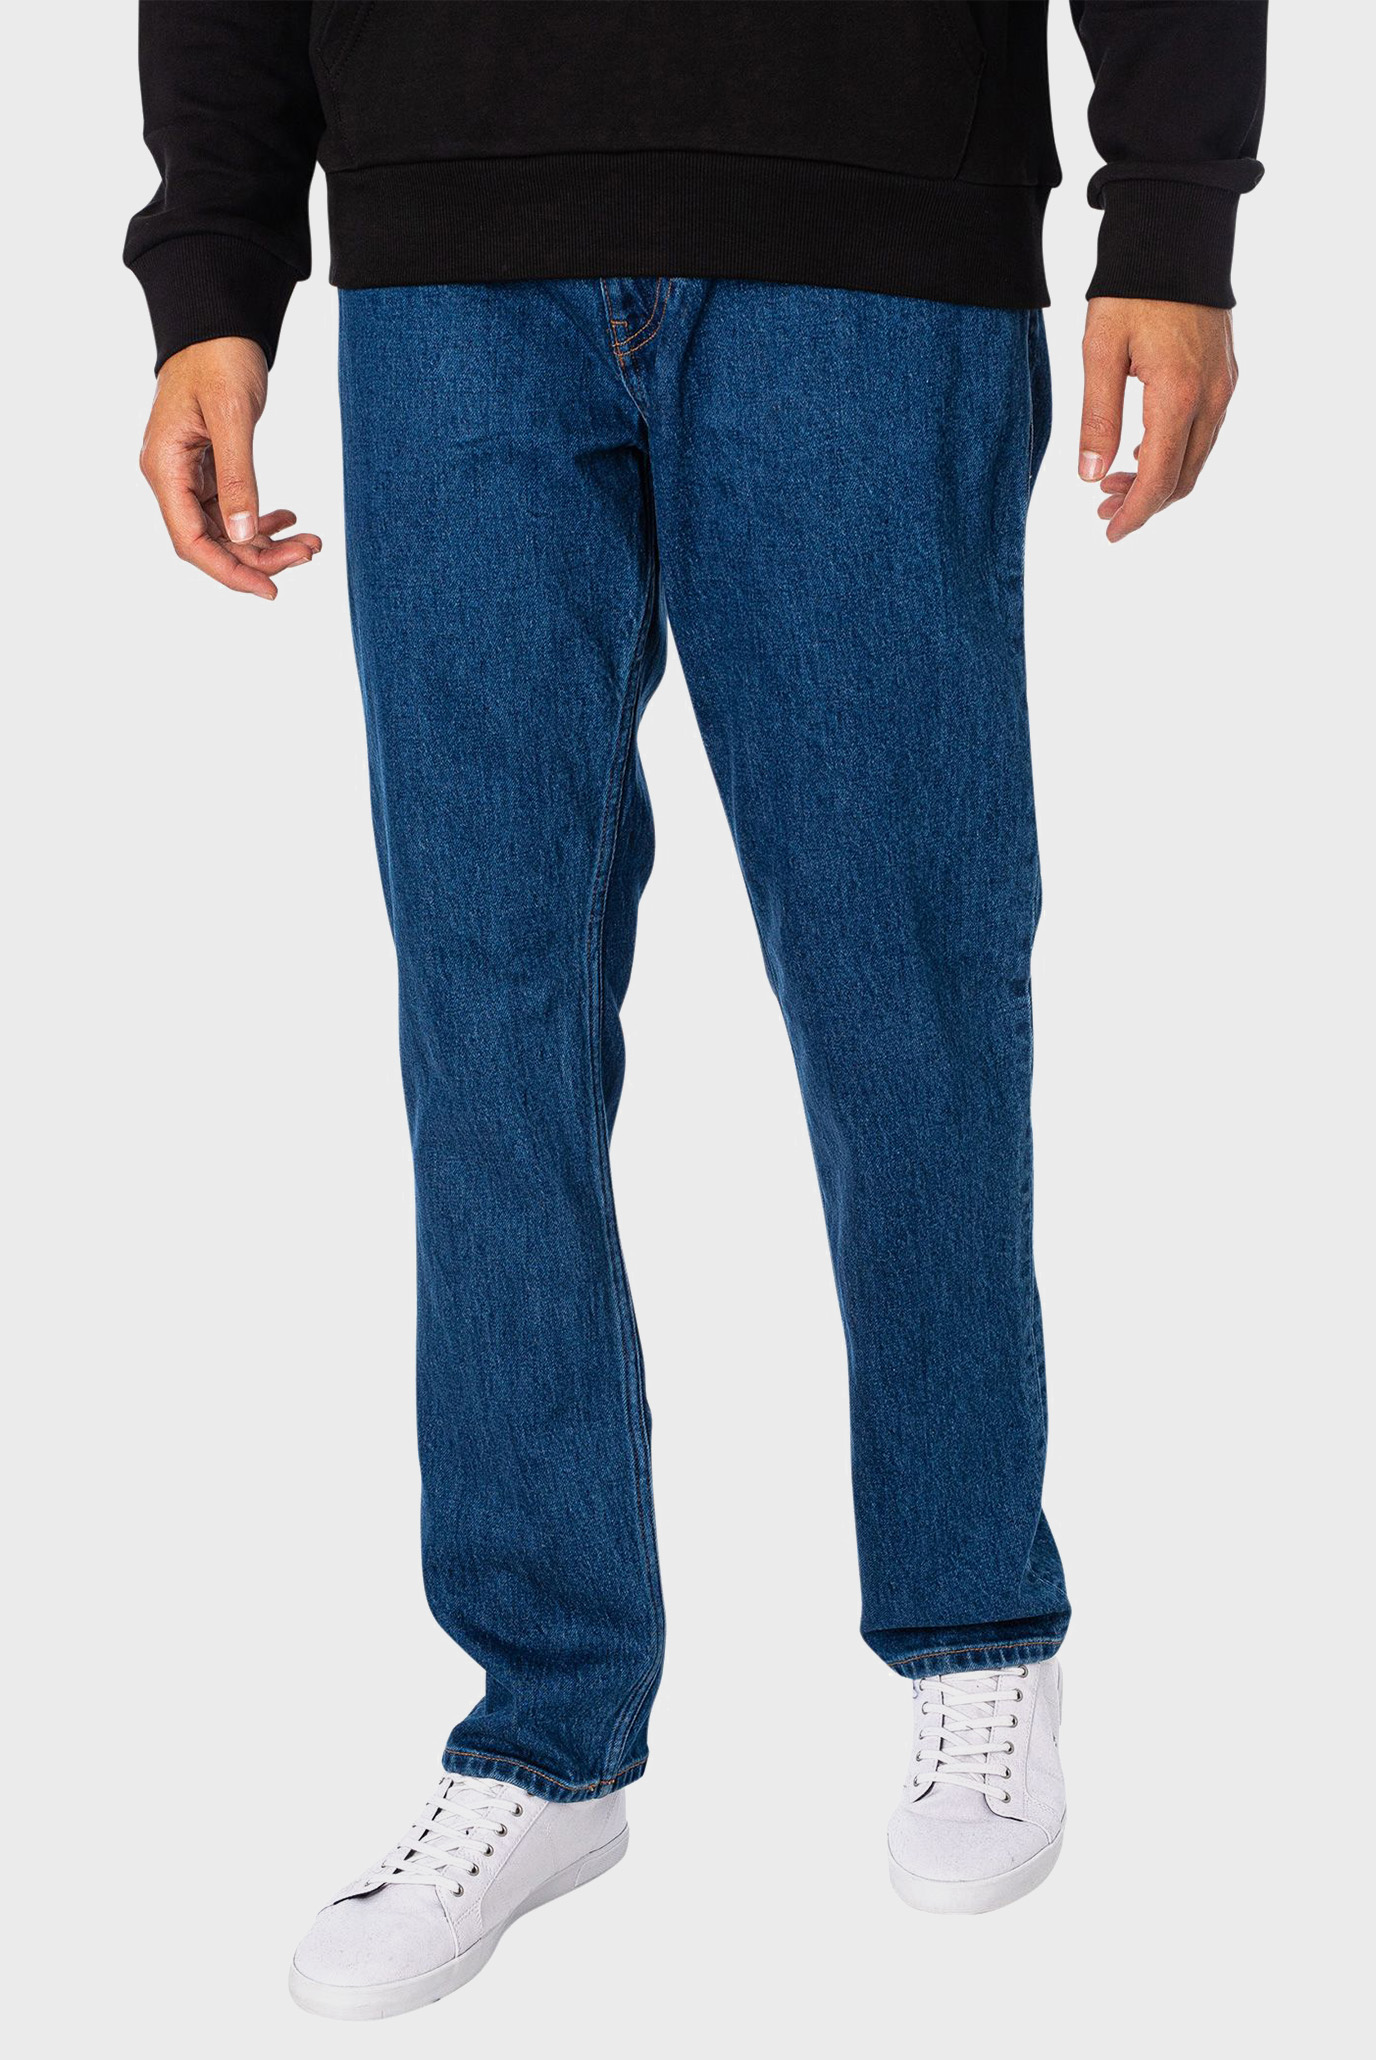 Чоловічі сині джинси RYAN RGLR STRGHT CG4158 1